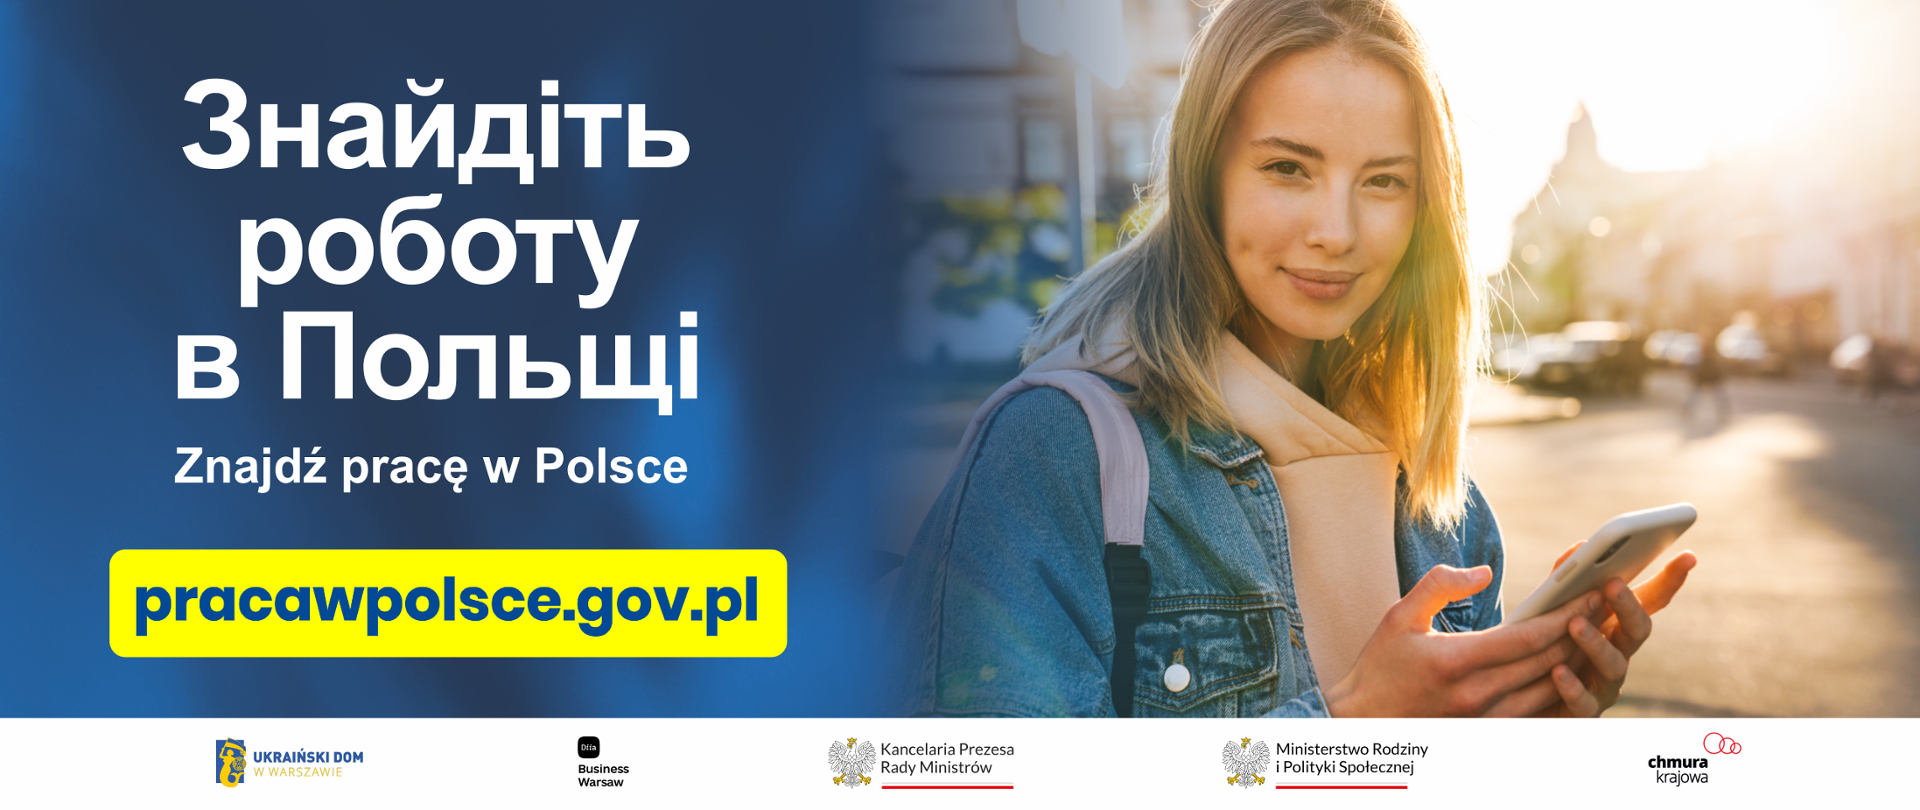 PracawPolsce.gov.pl – zwiększamy bazę ogłoszeń pracy dla obywateli Ukrainy